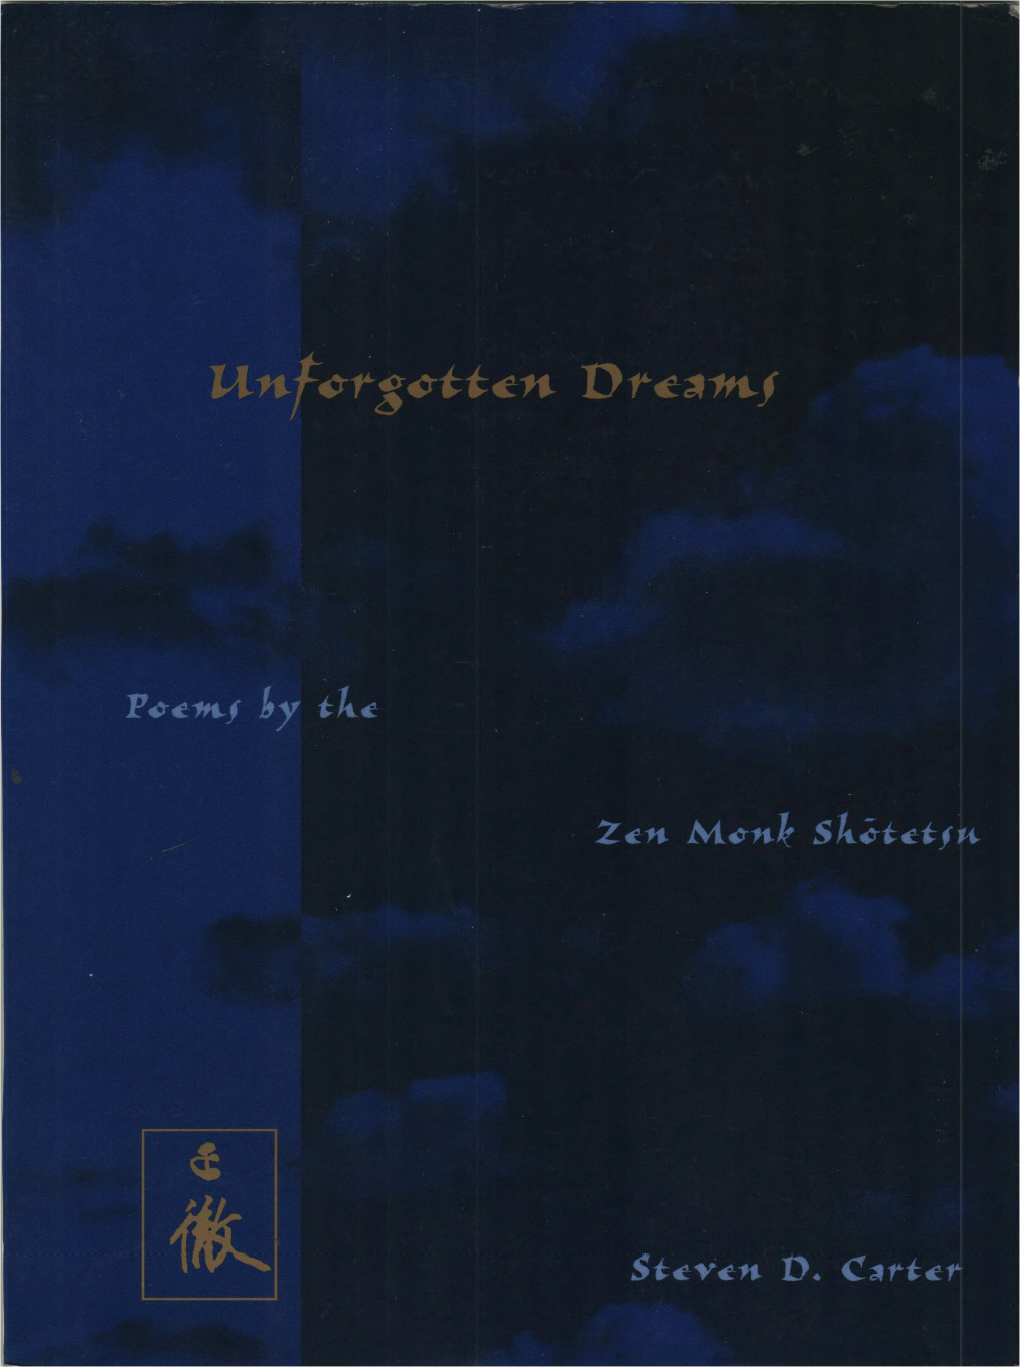 Unforgotten Dreams: Poems by the Zen Monk Shōtetsu